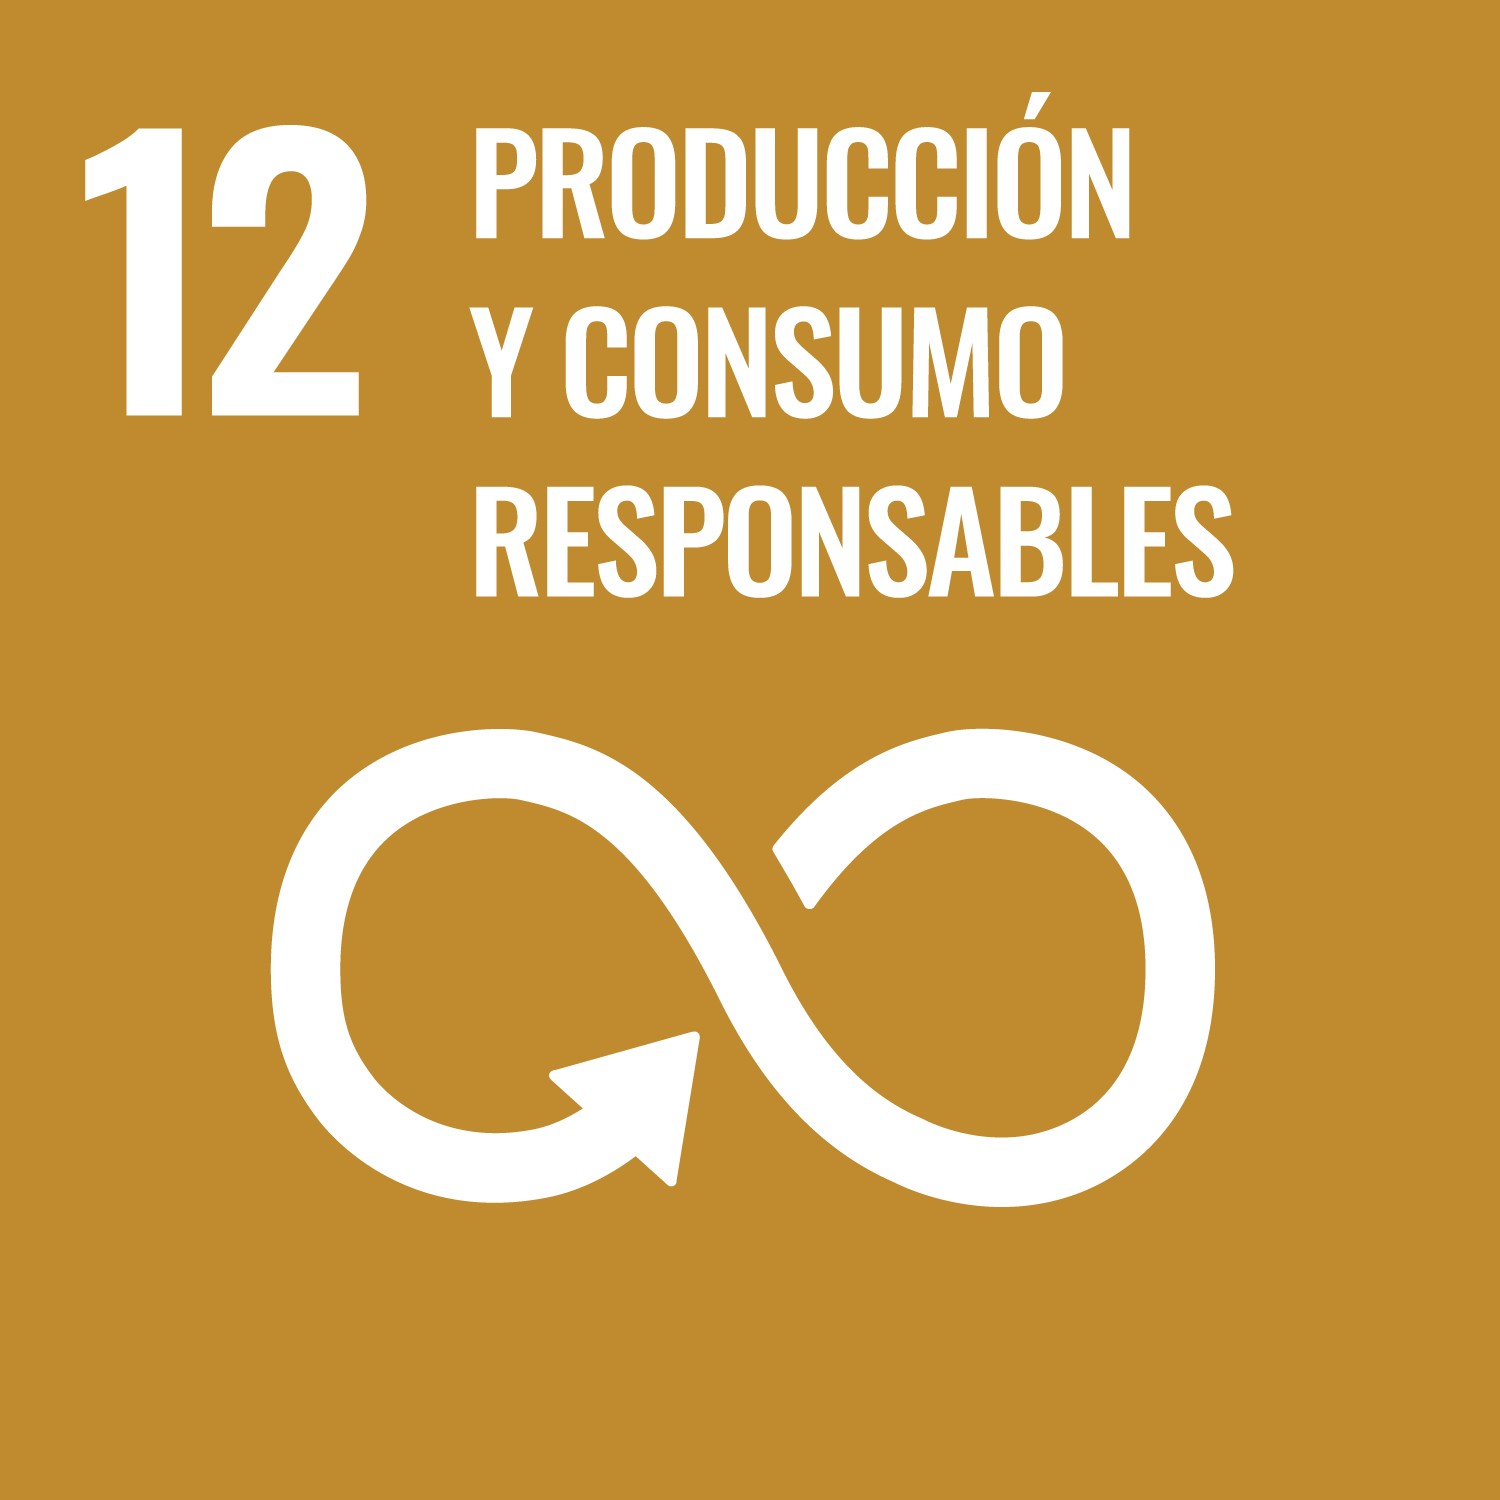 Furlong Incoming - Objetivo sostenible Producción y Consumo responsable